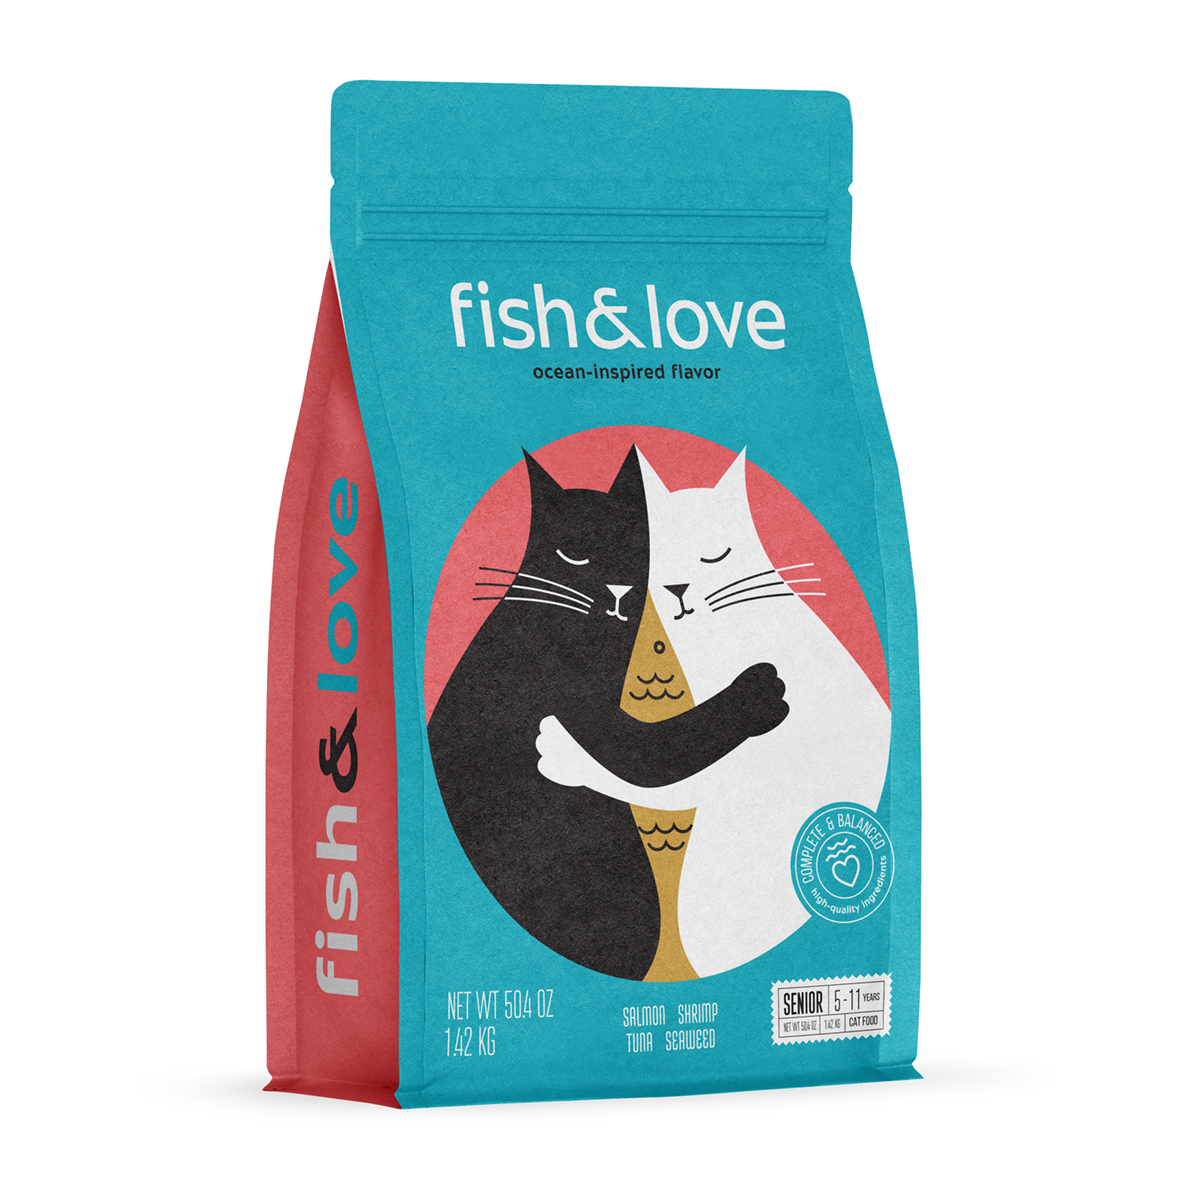 Fish&Love Cat Food Packaging Design